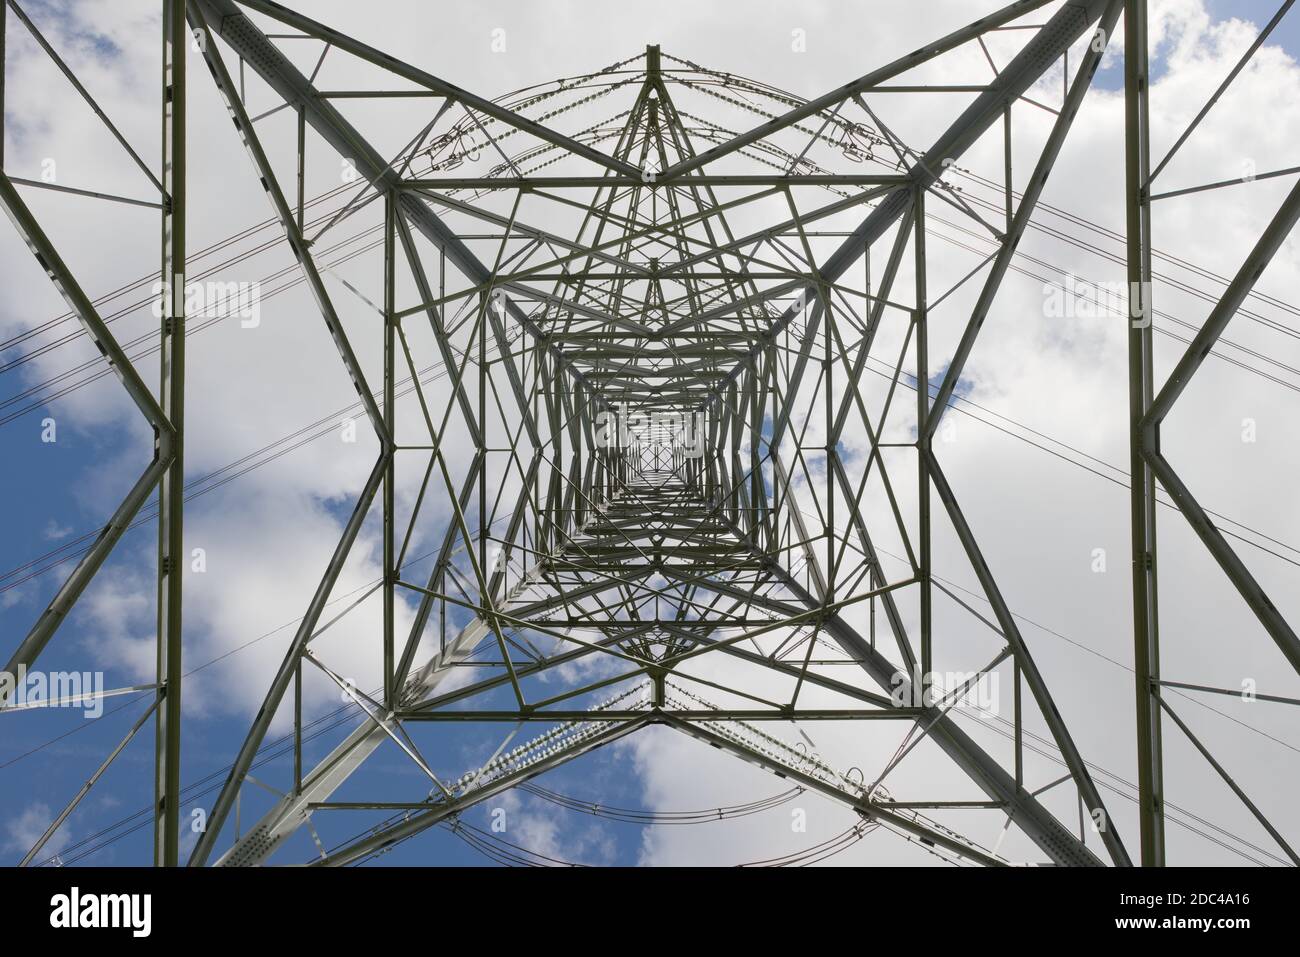 Lignes de transmission électrique industrielle et tour de pylône. Les répétitions, les convergences et les répétitions complexes sont créées par la structure en treillis métallique. Banque D'Images